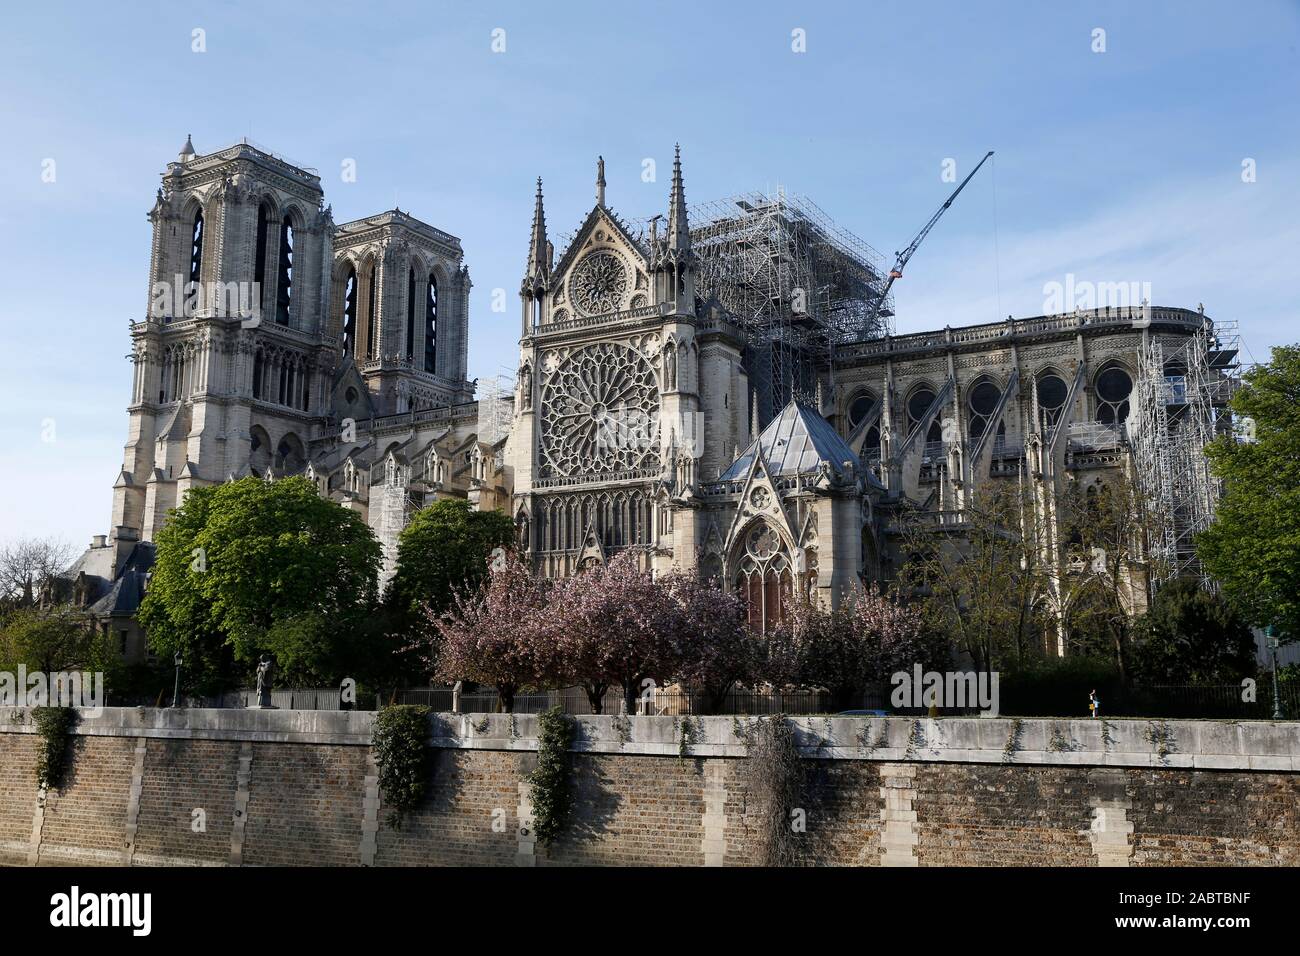 La cathédrale Notre Dame en réparation, Paris, France. Banque D'Images